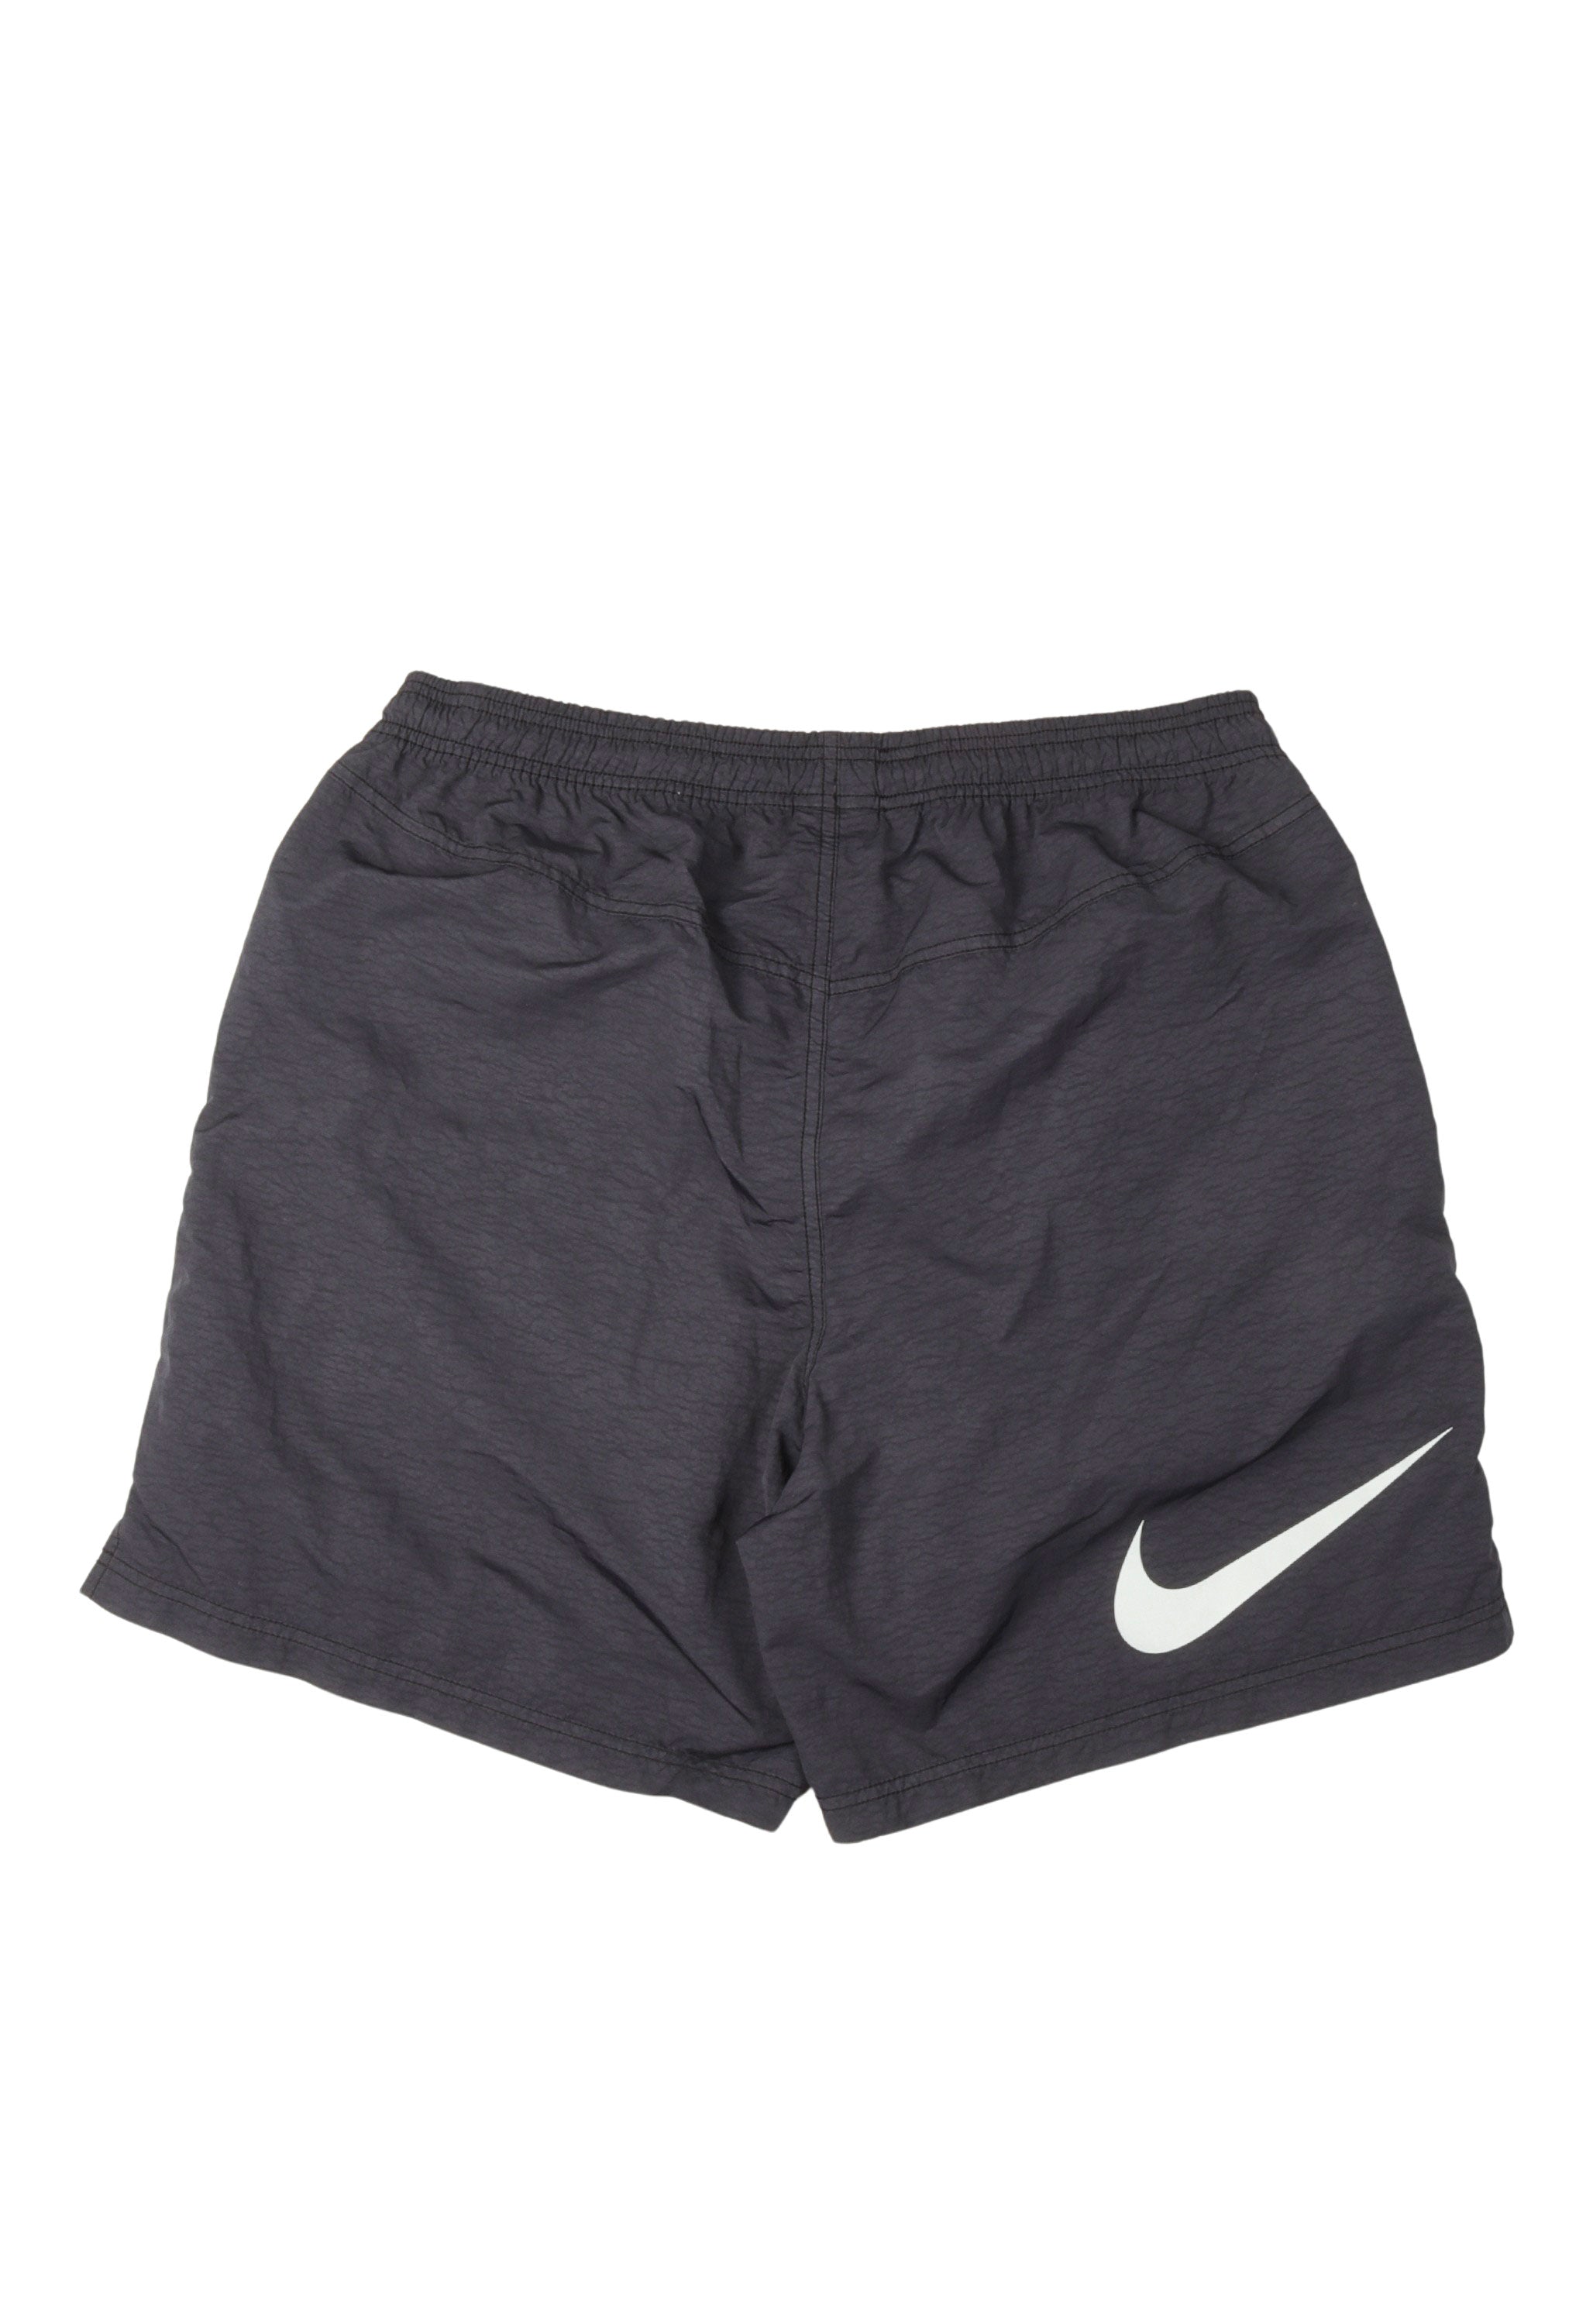 Stussy Nike Nylon Shorts